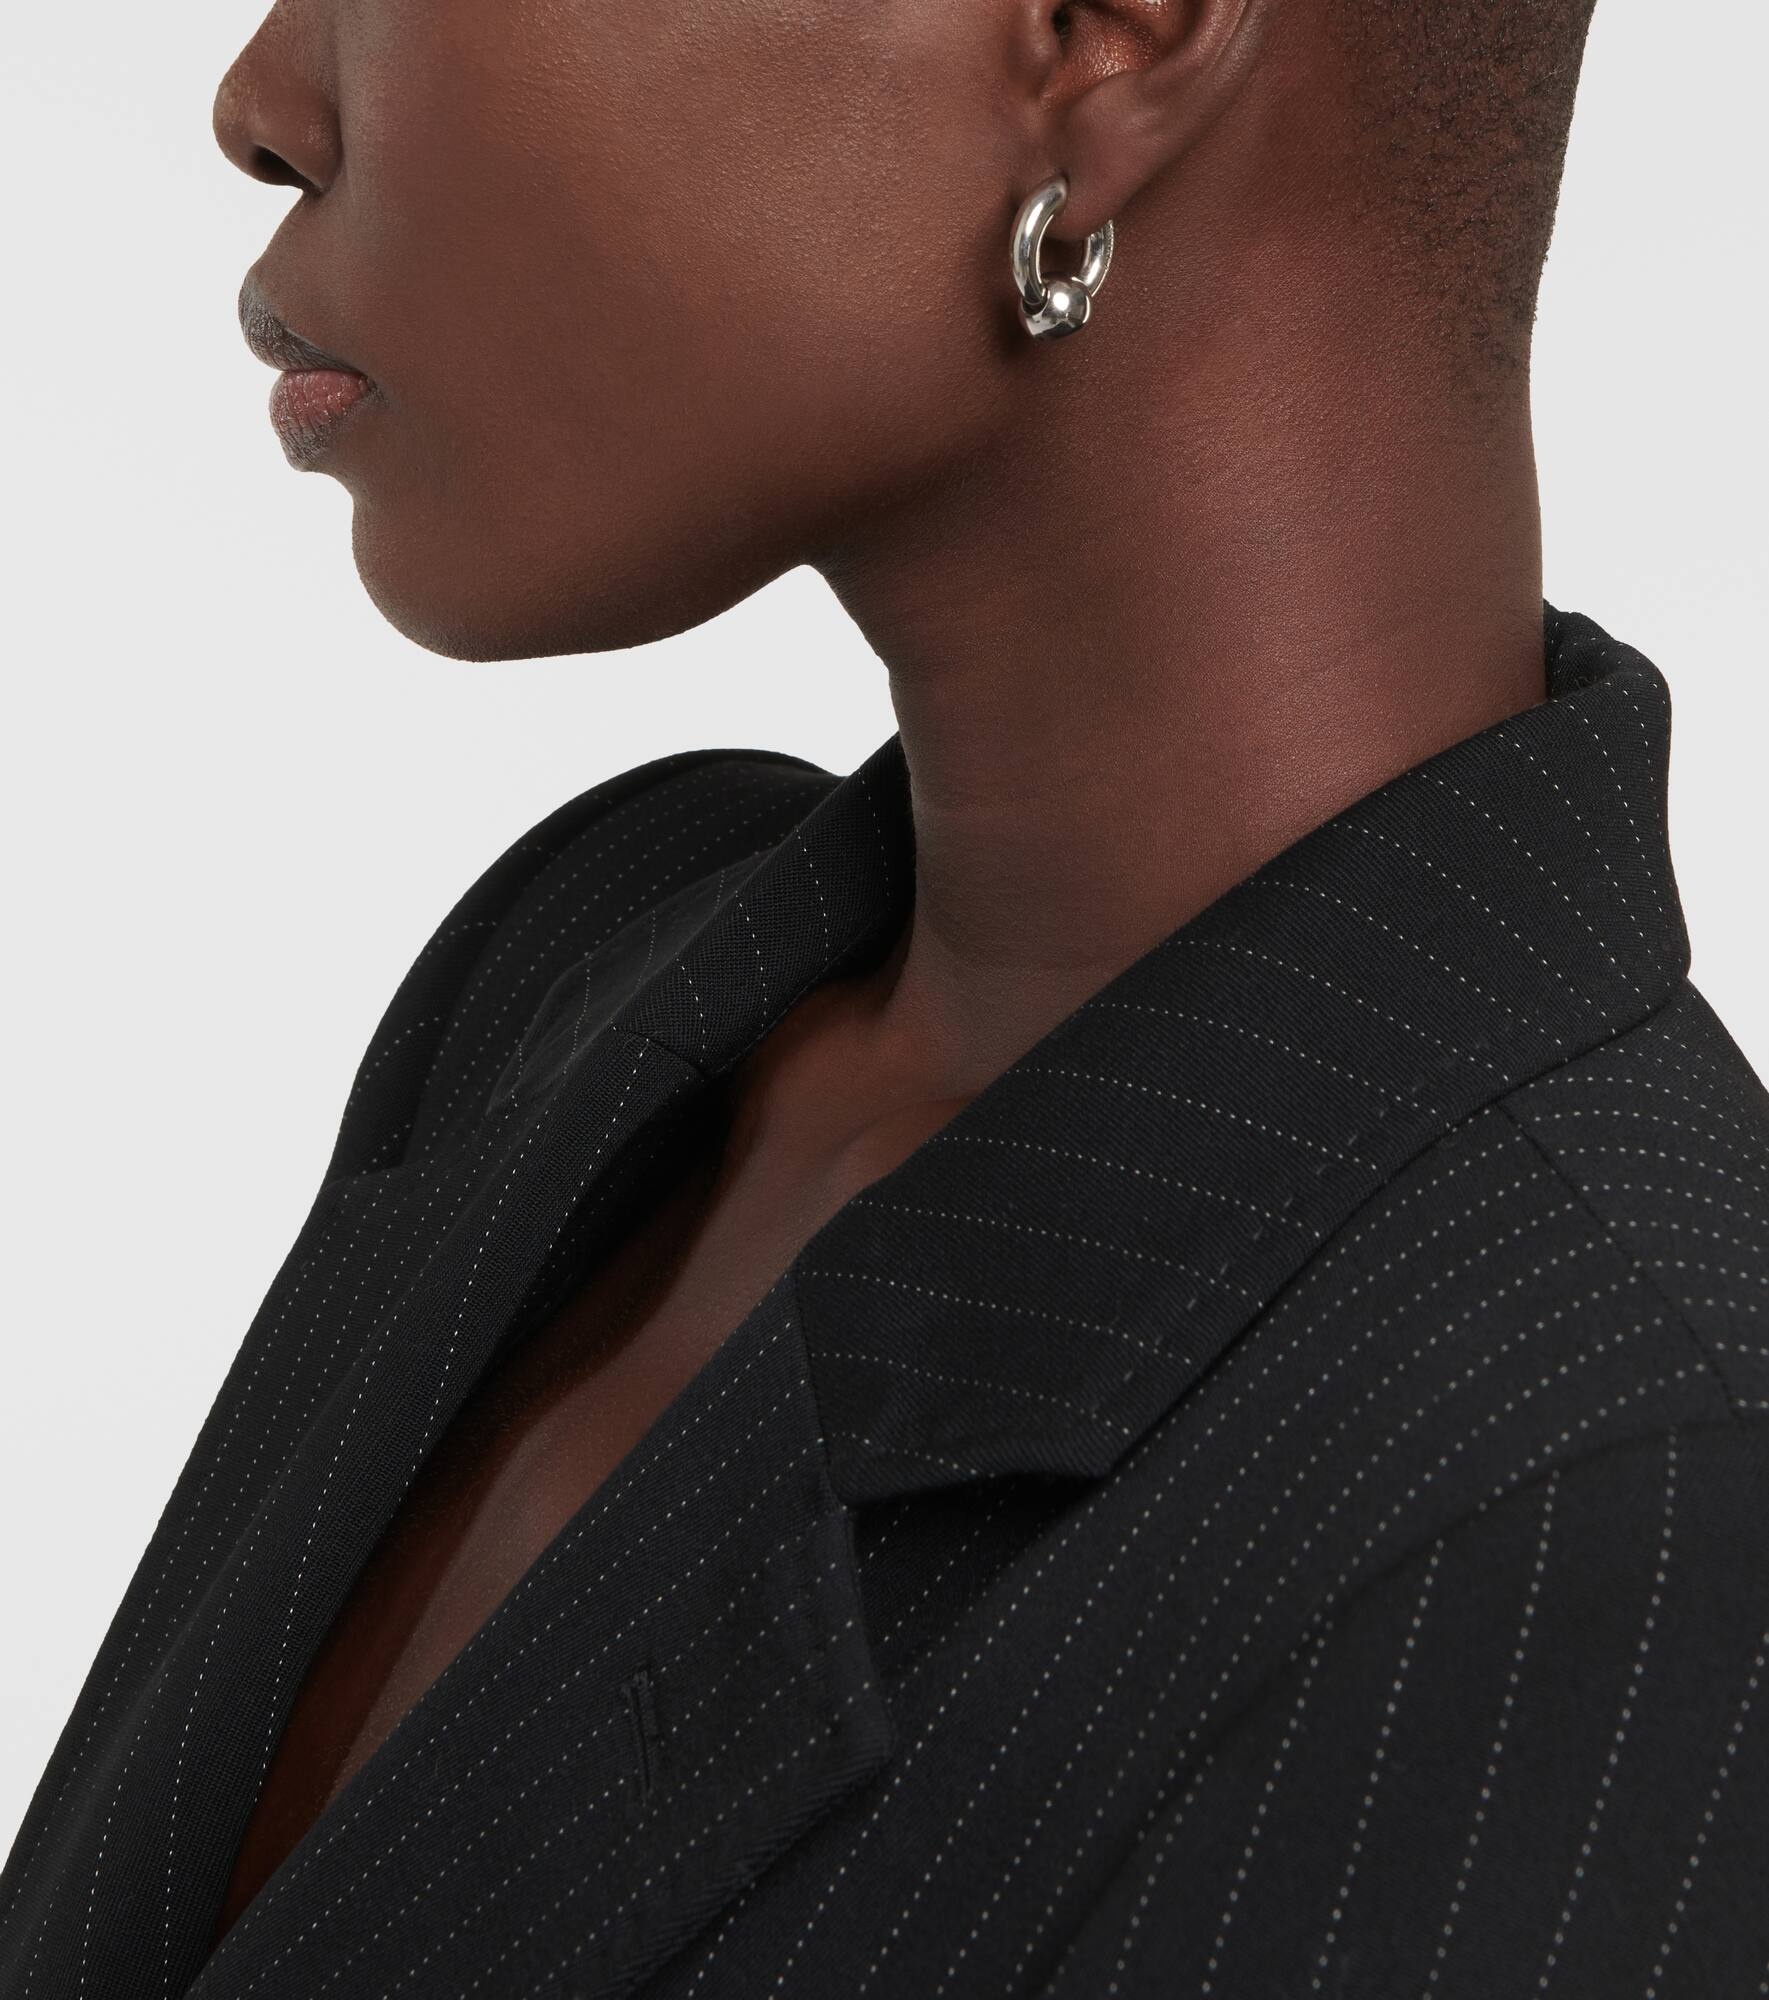 Sharp Ball earrings - 3